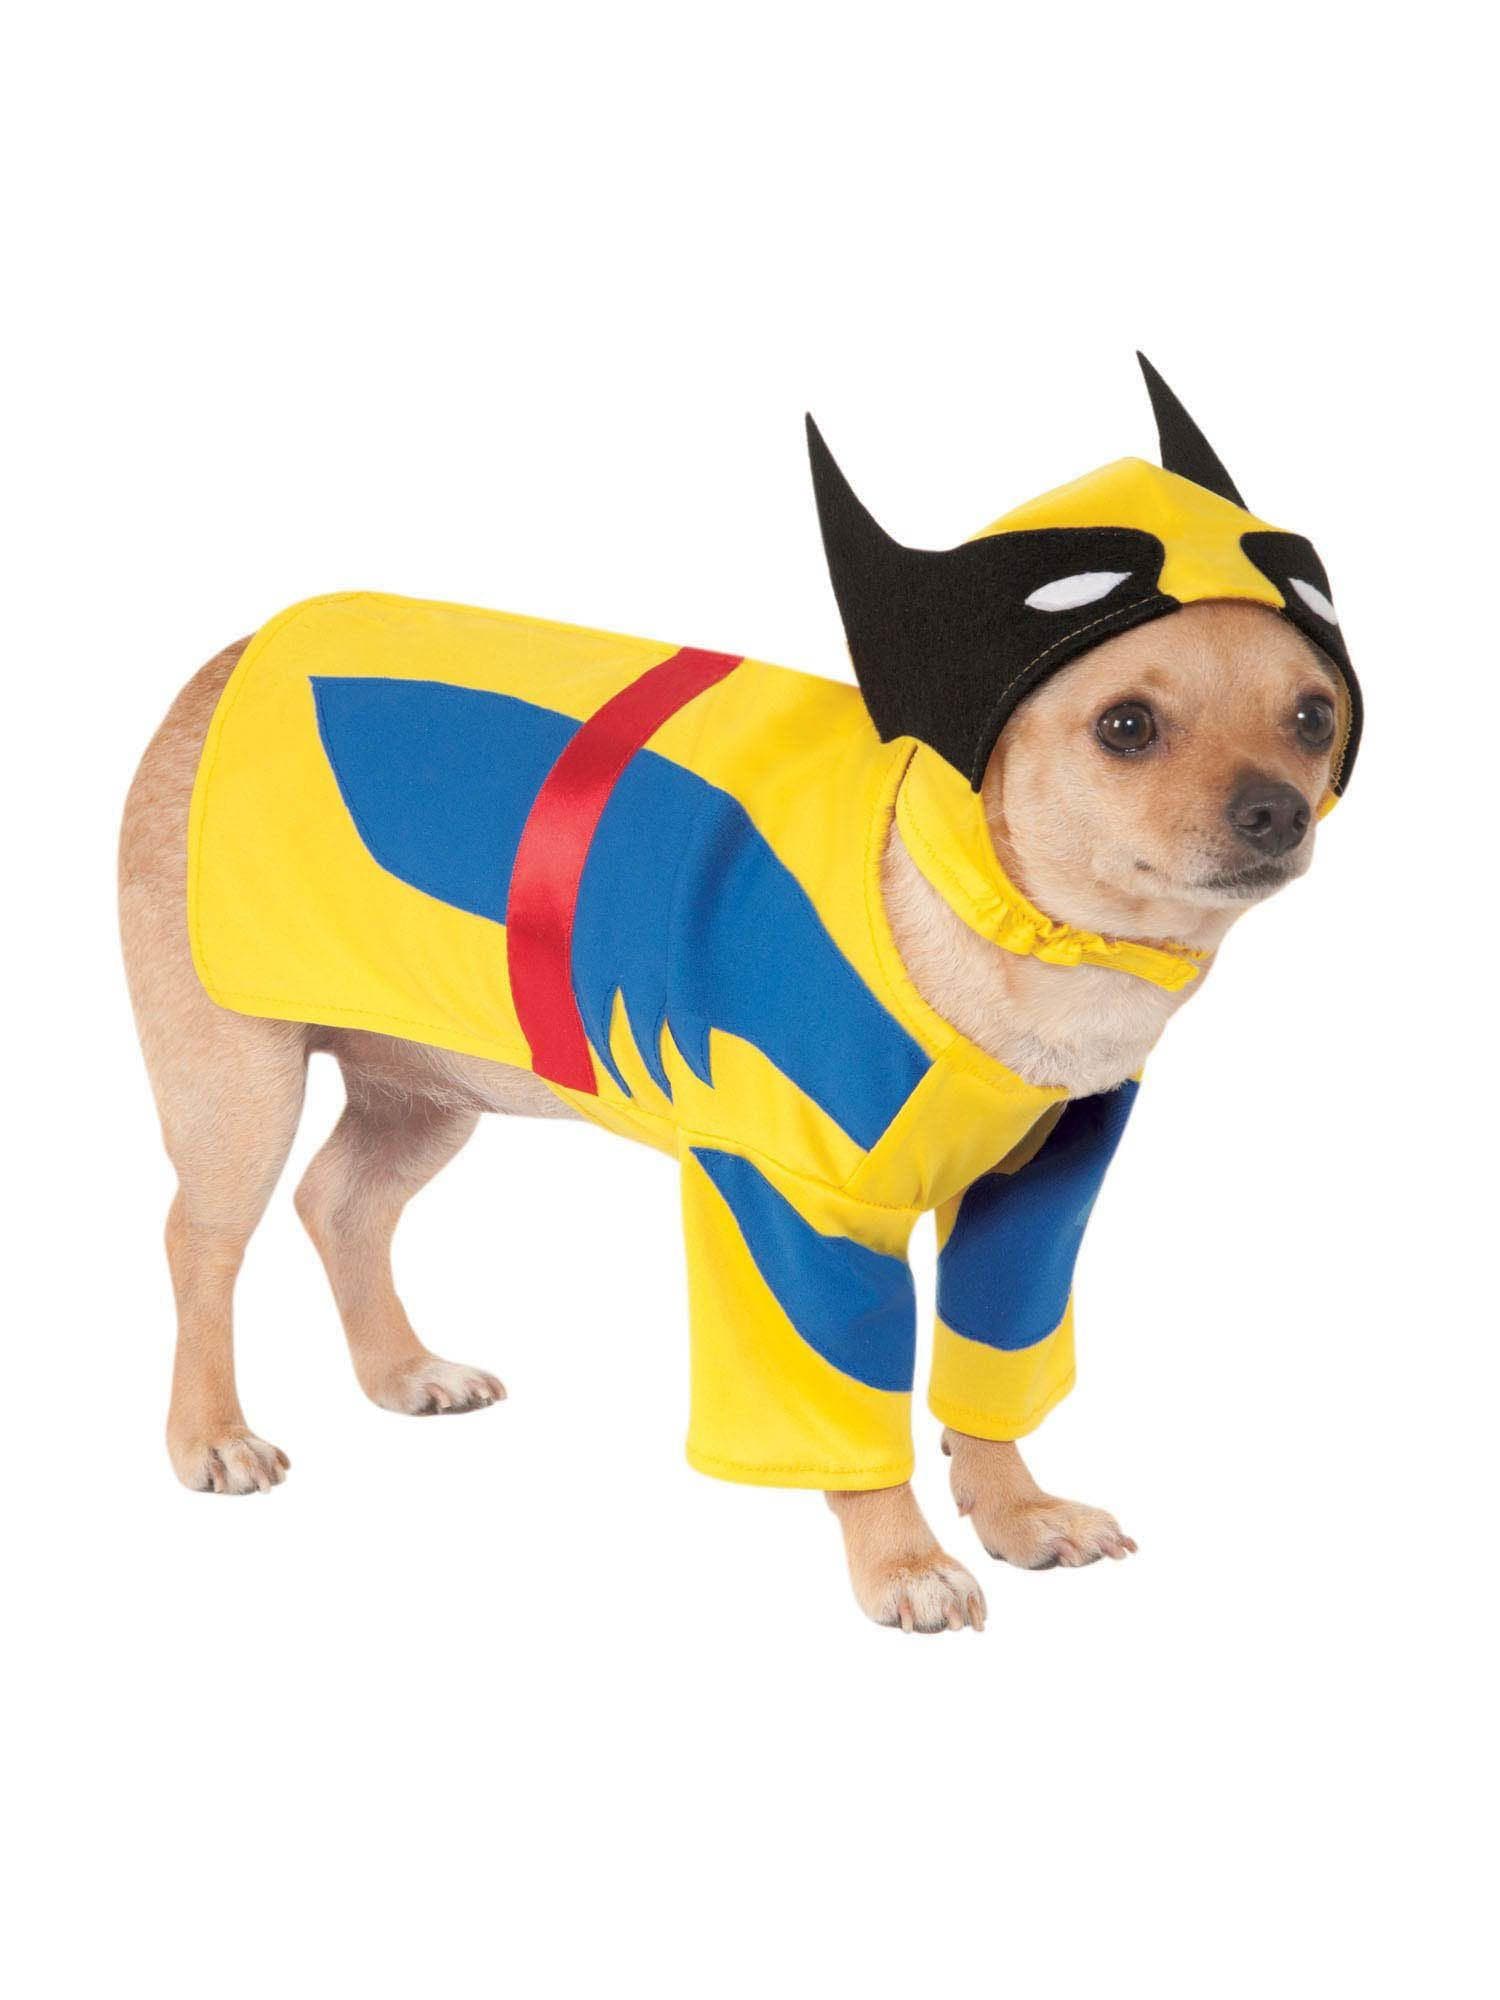 X-Men Wolverine Pet Costume - costumes.com